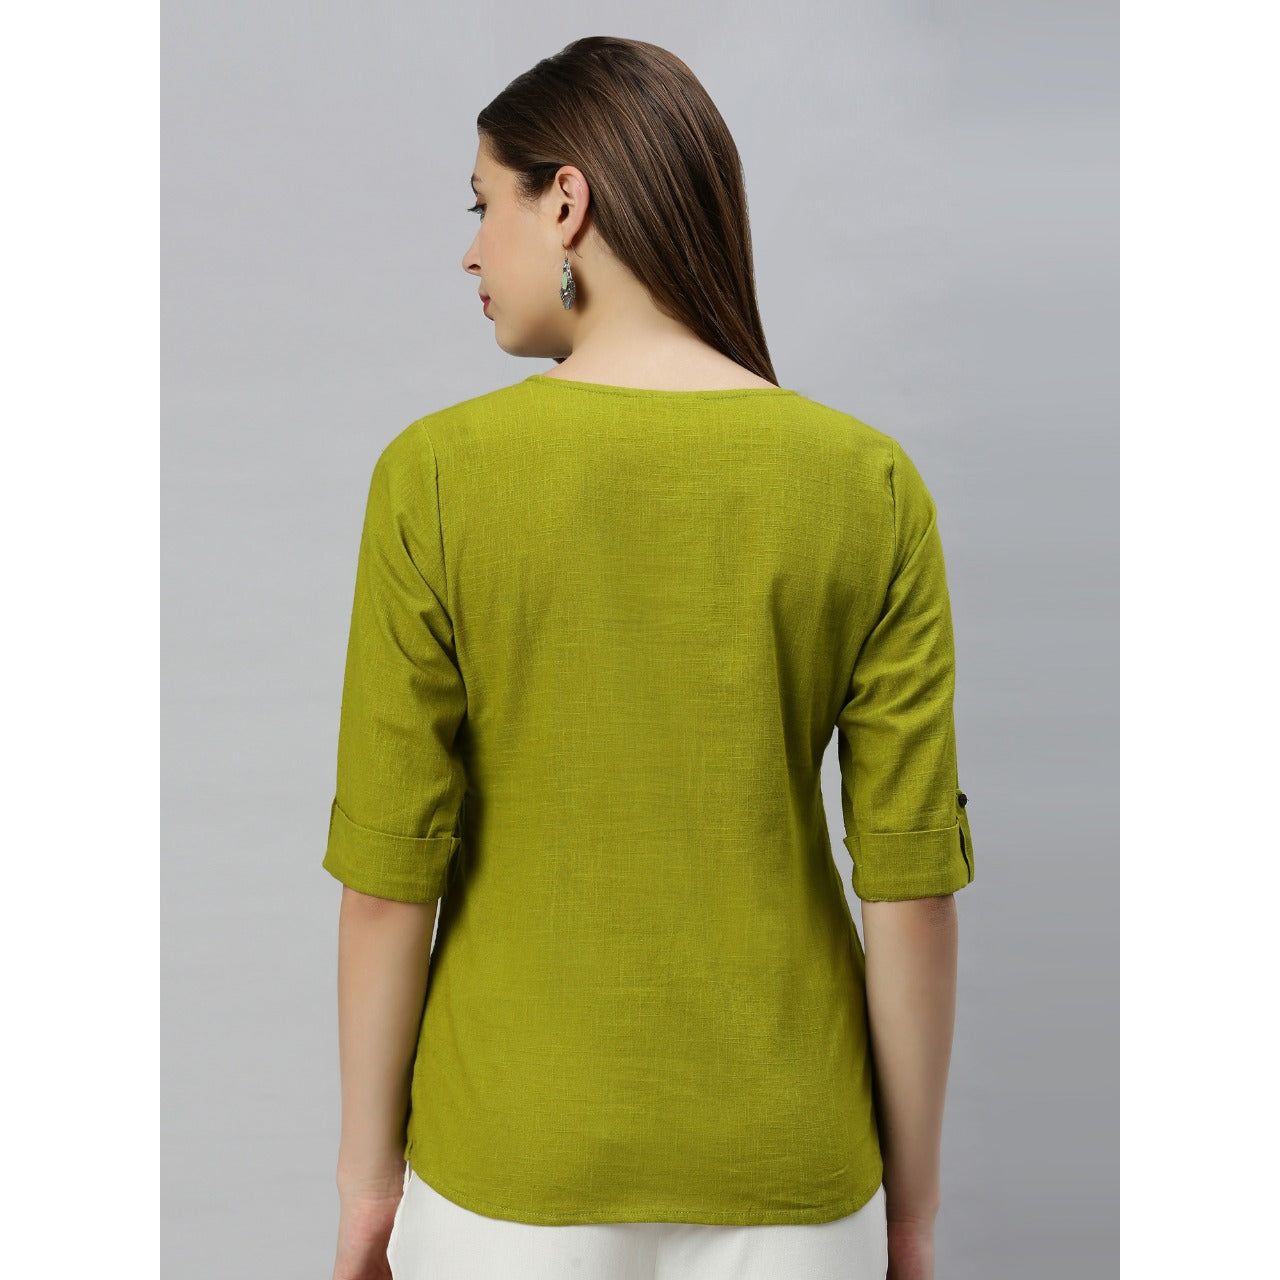 Green Short Kurti / Indian Tunic Top for Women